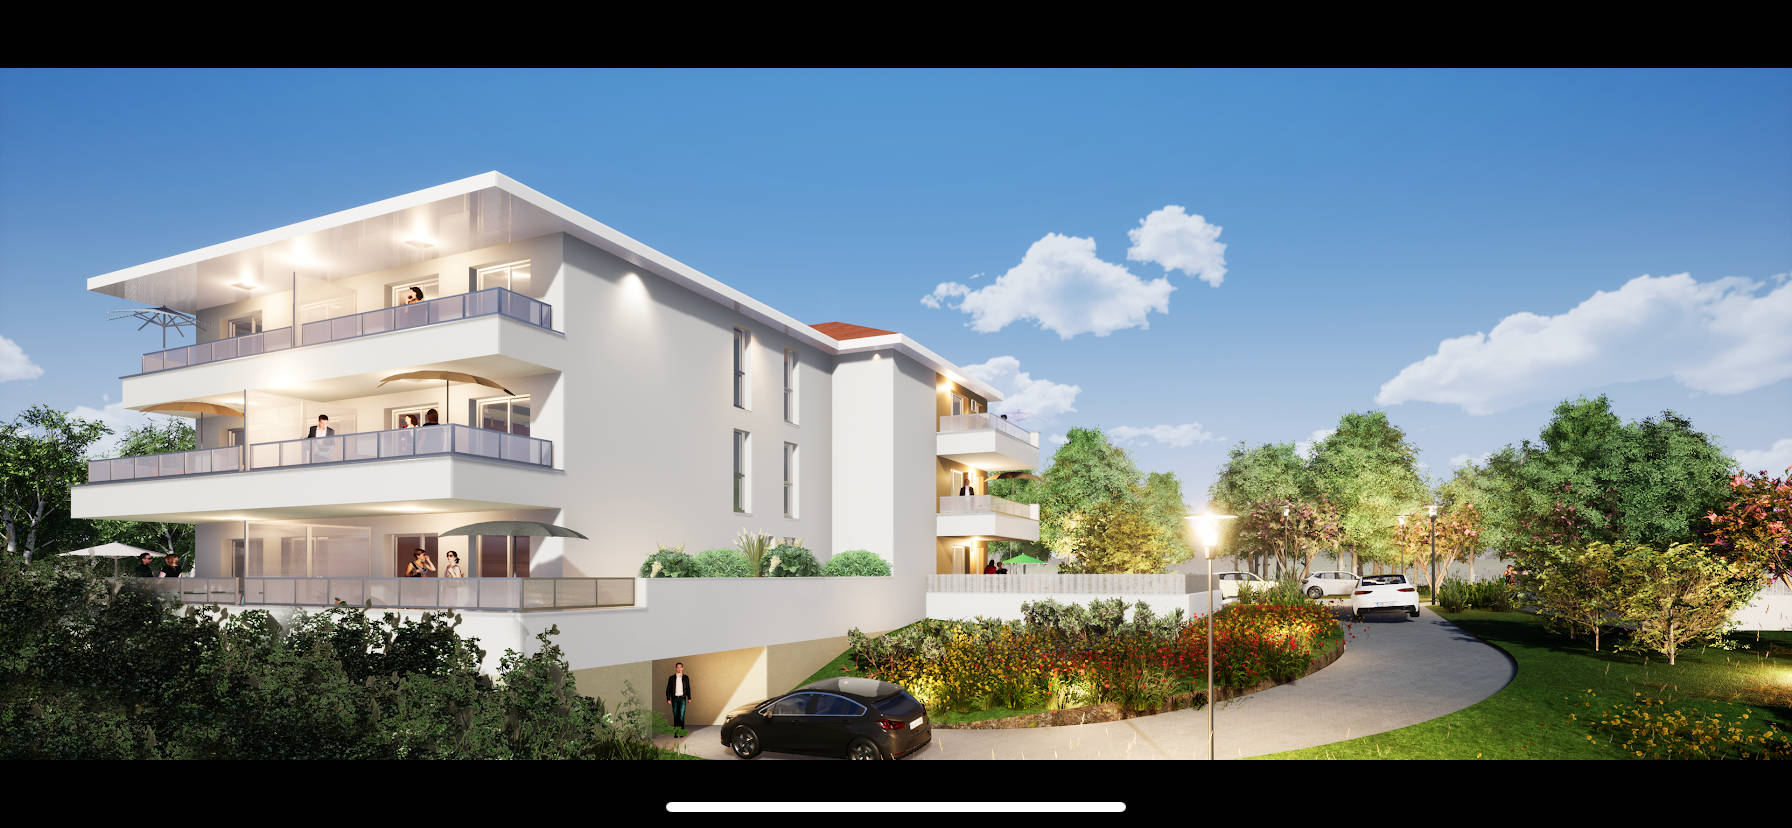 Programme immobilier neuf L'Isle-d'Abeau secteur résidentiel calme